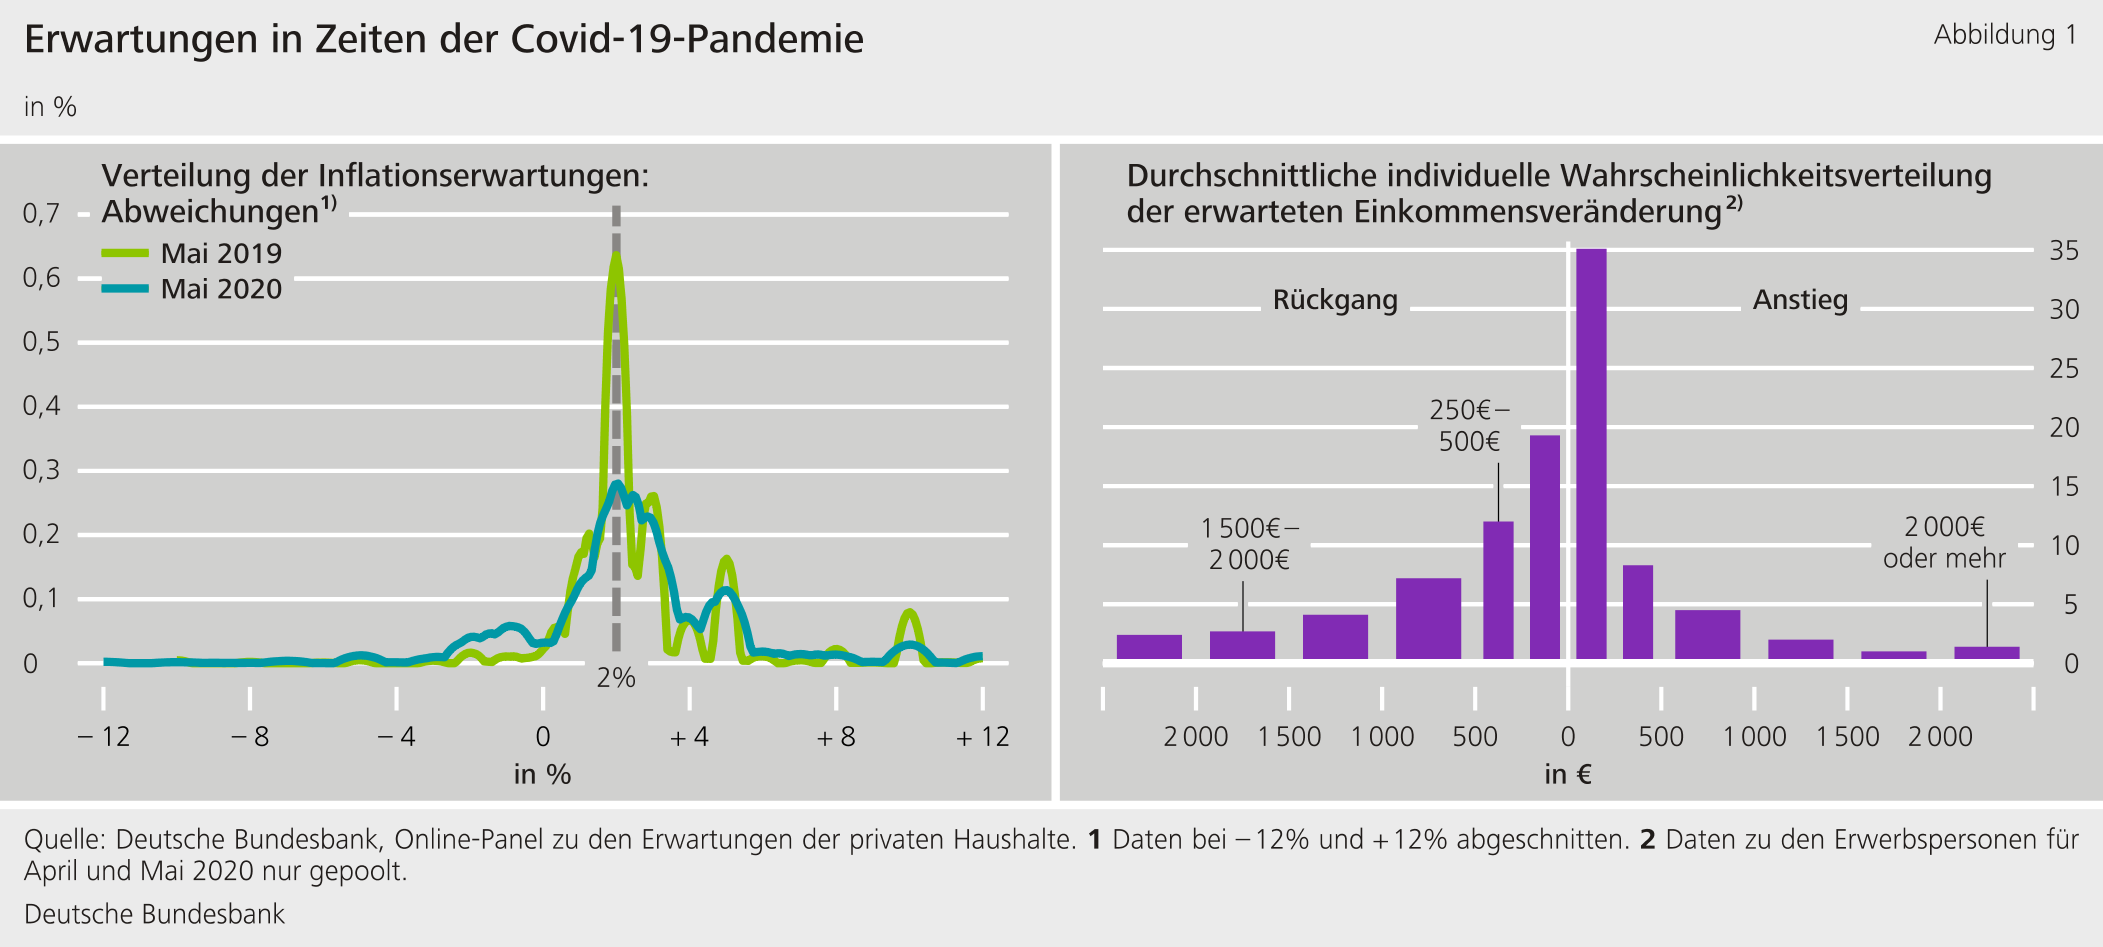 Abbildung 1: Erwartungen in Zeiten der Covid-19-Pandemie